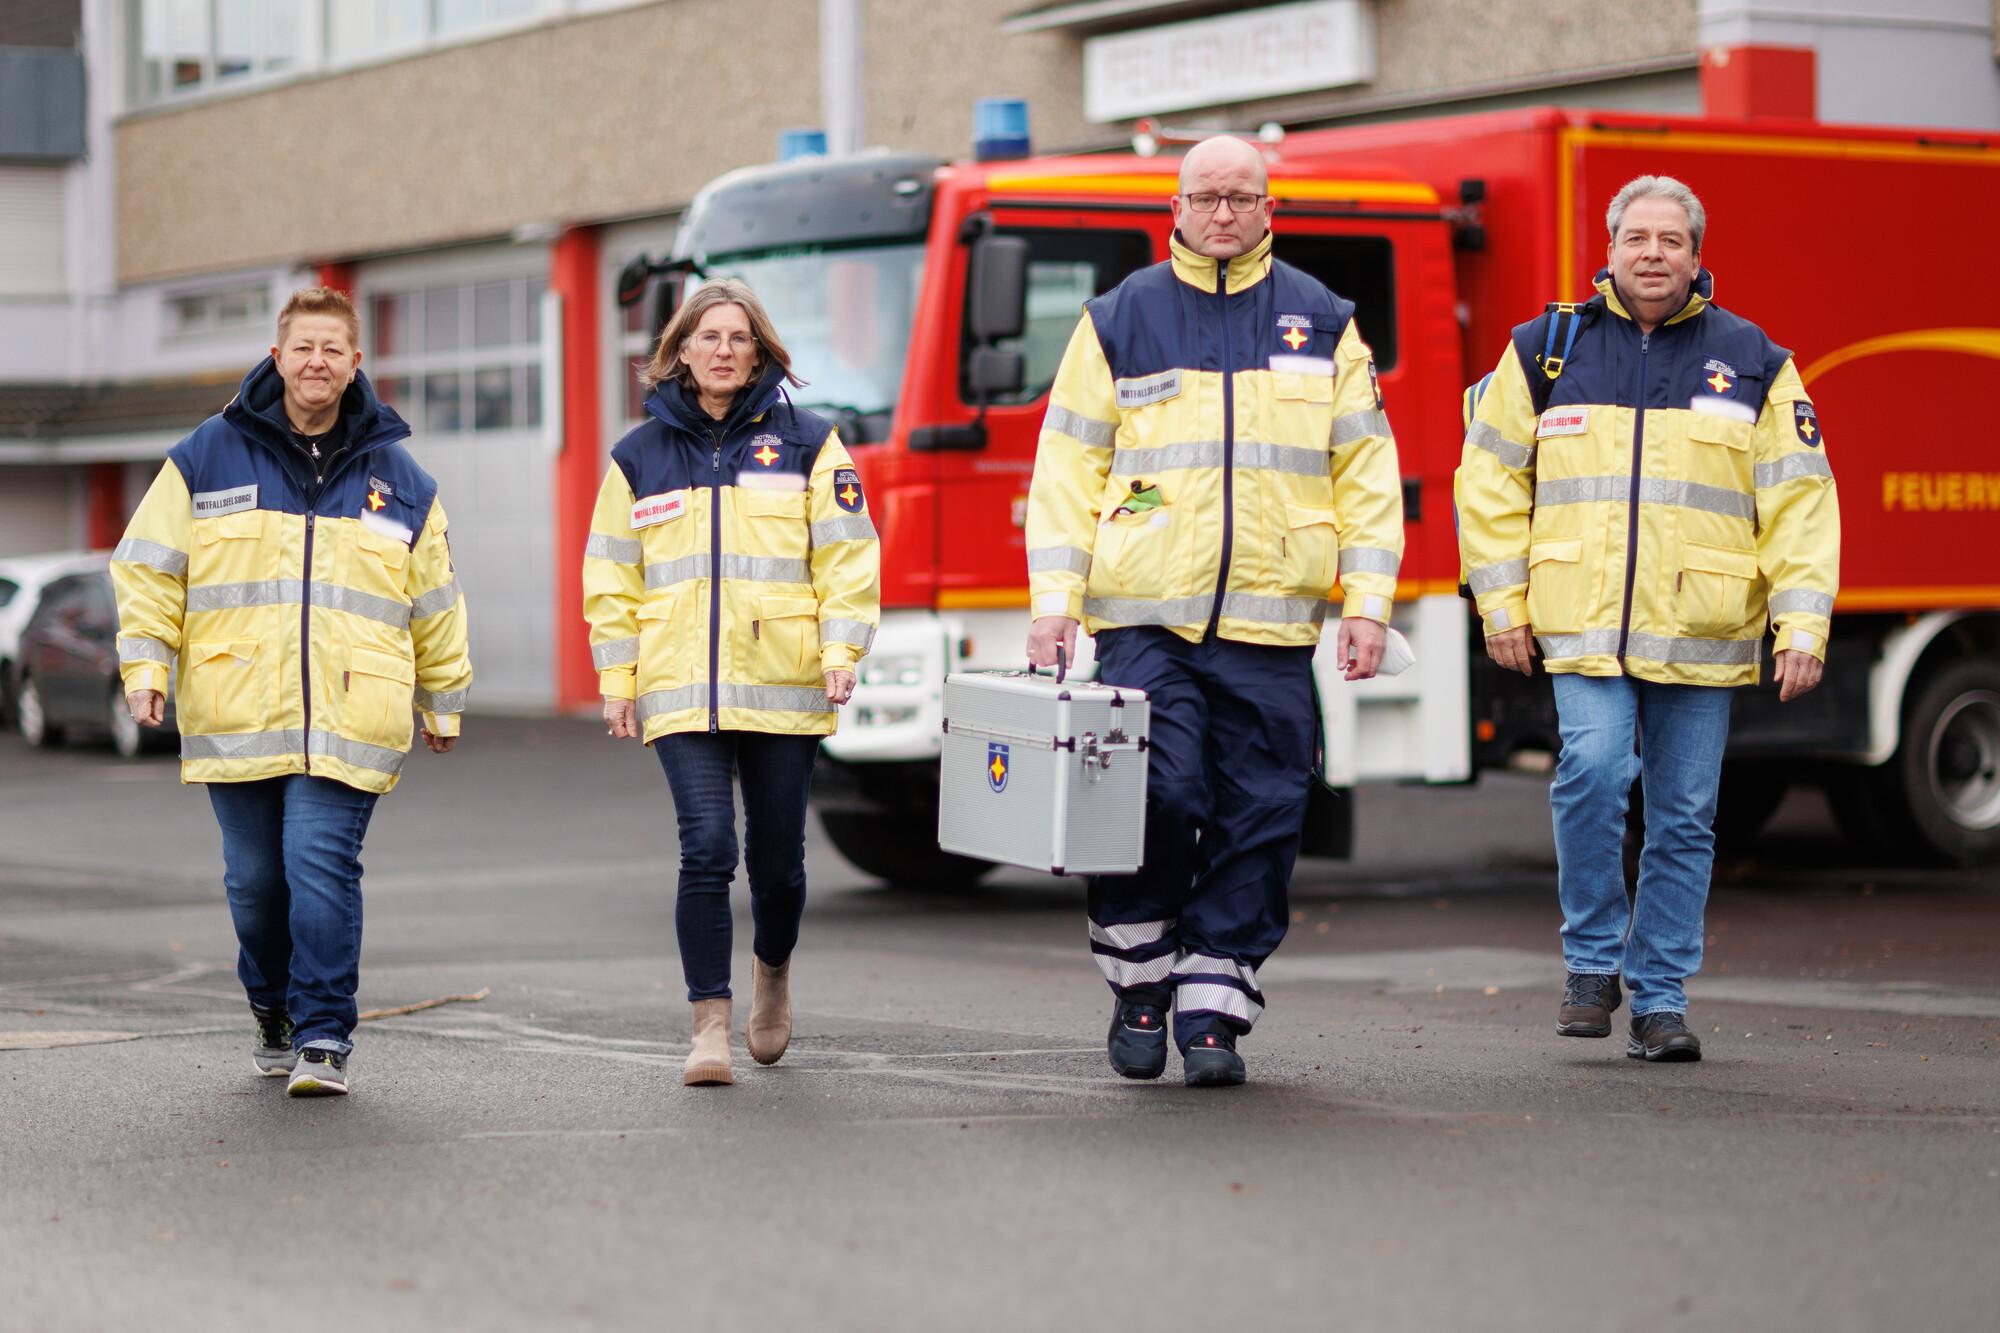 Vier Personen laufen auf den Fotografen zu. Sie tragen Uniformen der Notfallseelsorge. Im Hintergrund steht ein Feuerwehrfahrzeug vor der Brandwache.